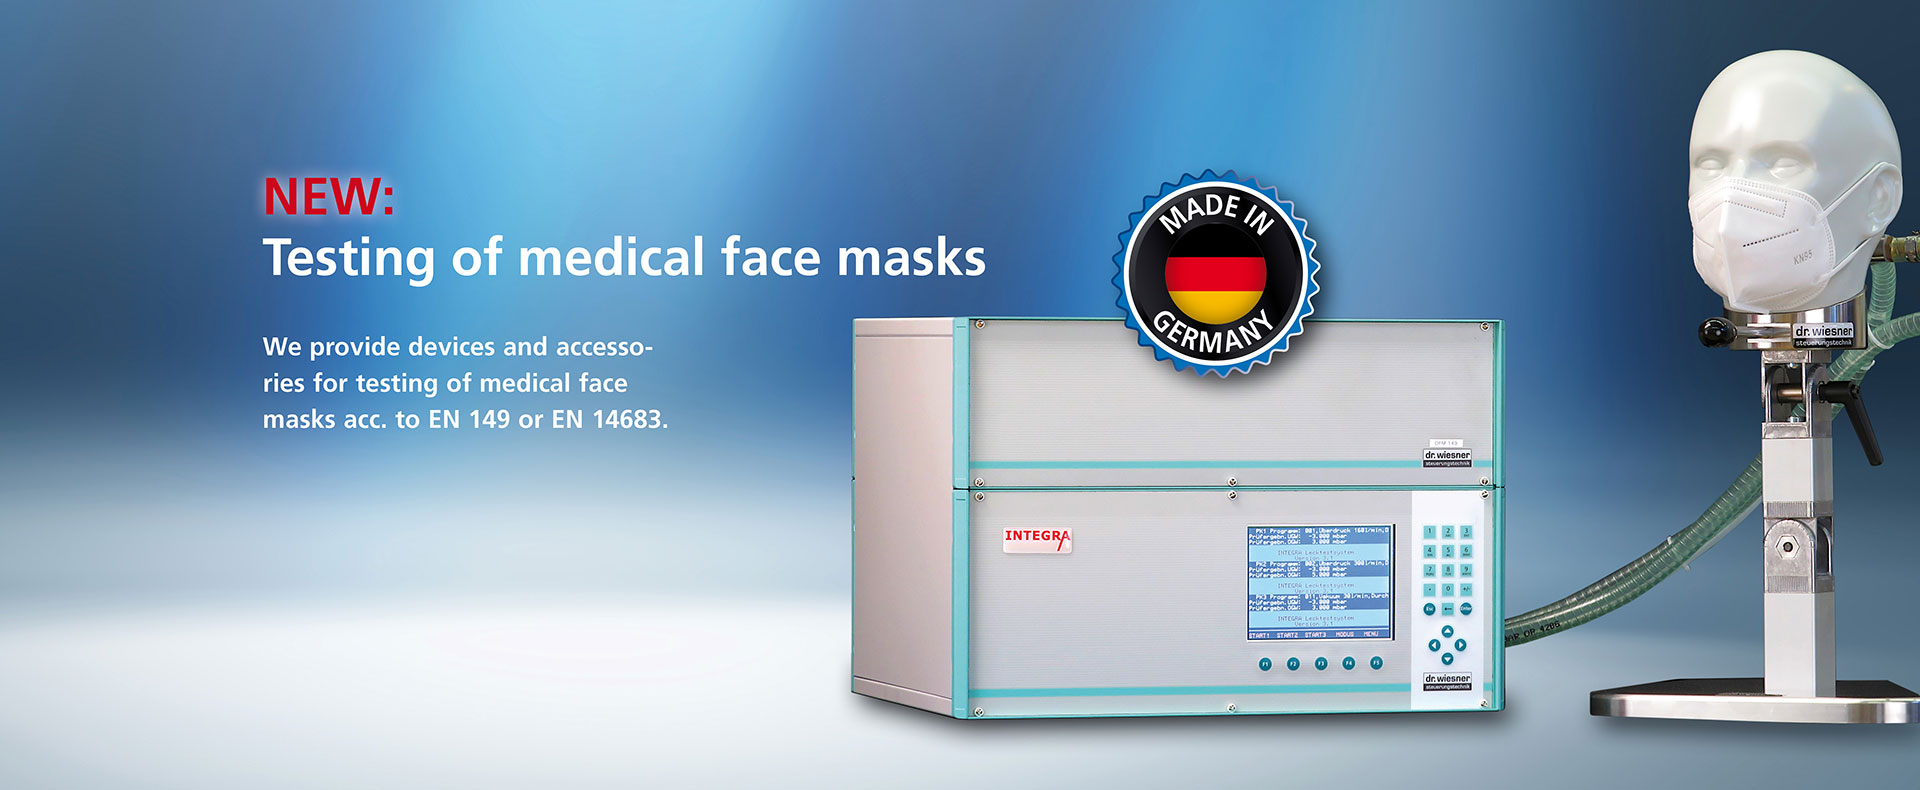 testing of medical face masks